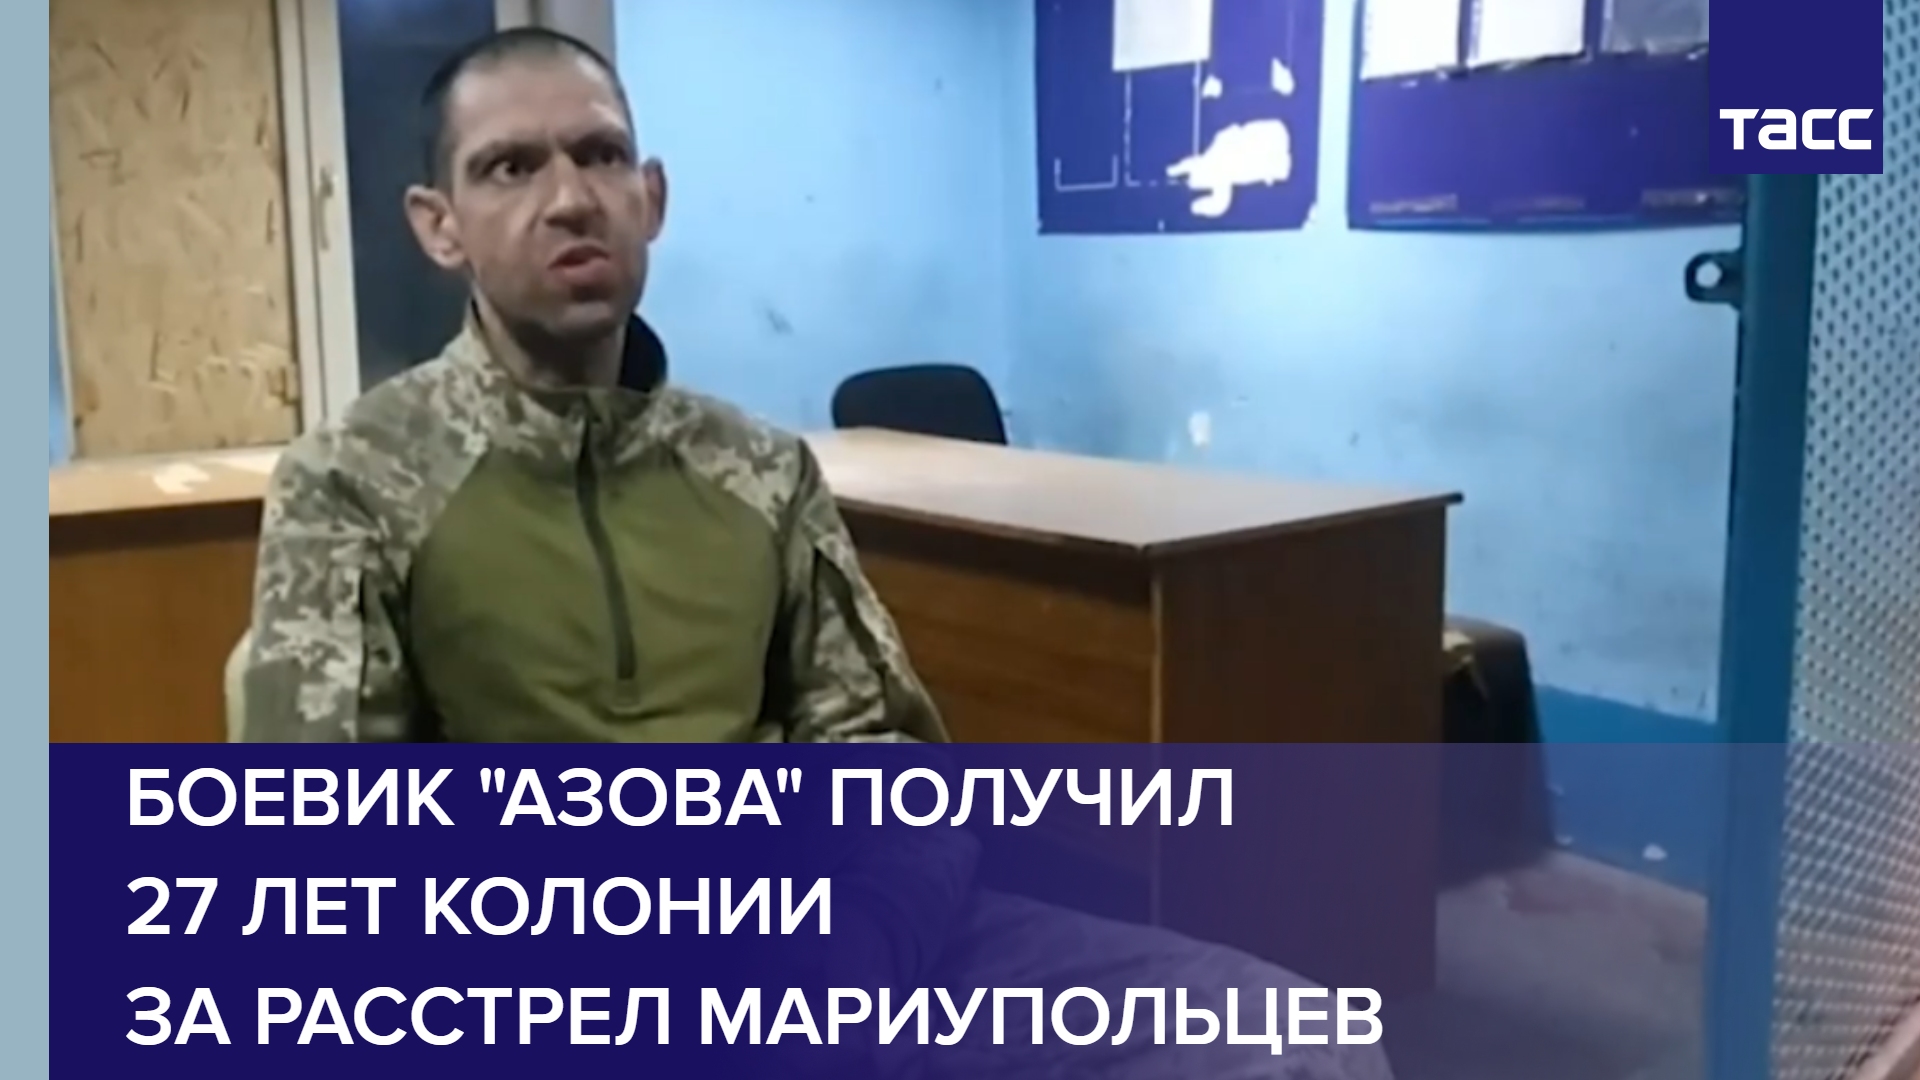 Боевик "Азова" получил 27 лет колонии за расстрел мариупольцев